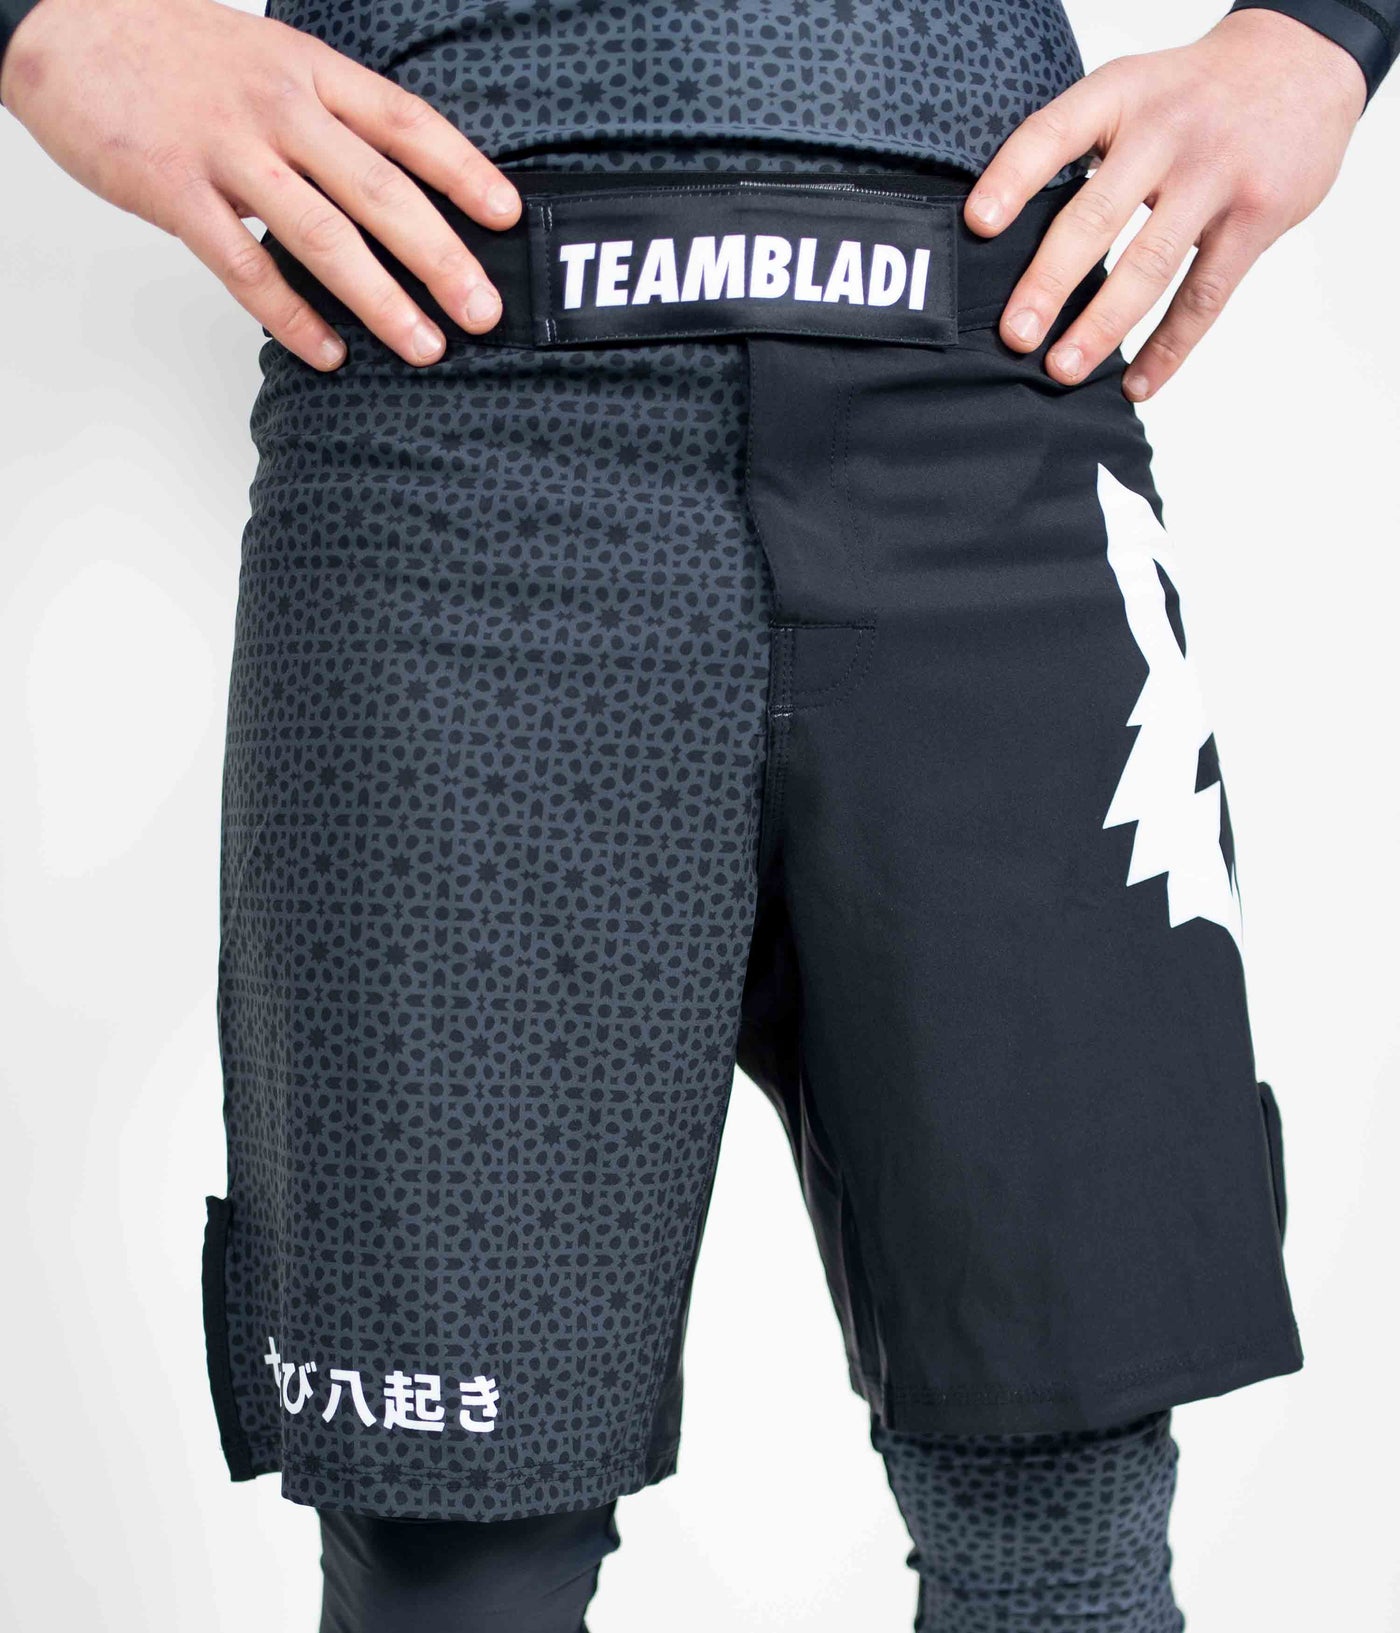 Senshi Grappling MMA Short Black, MMA Short, Grappling Short, Teambladi Short